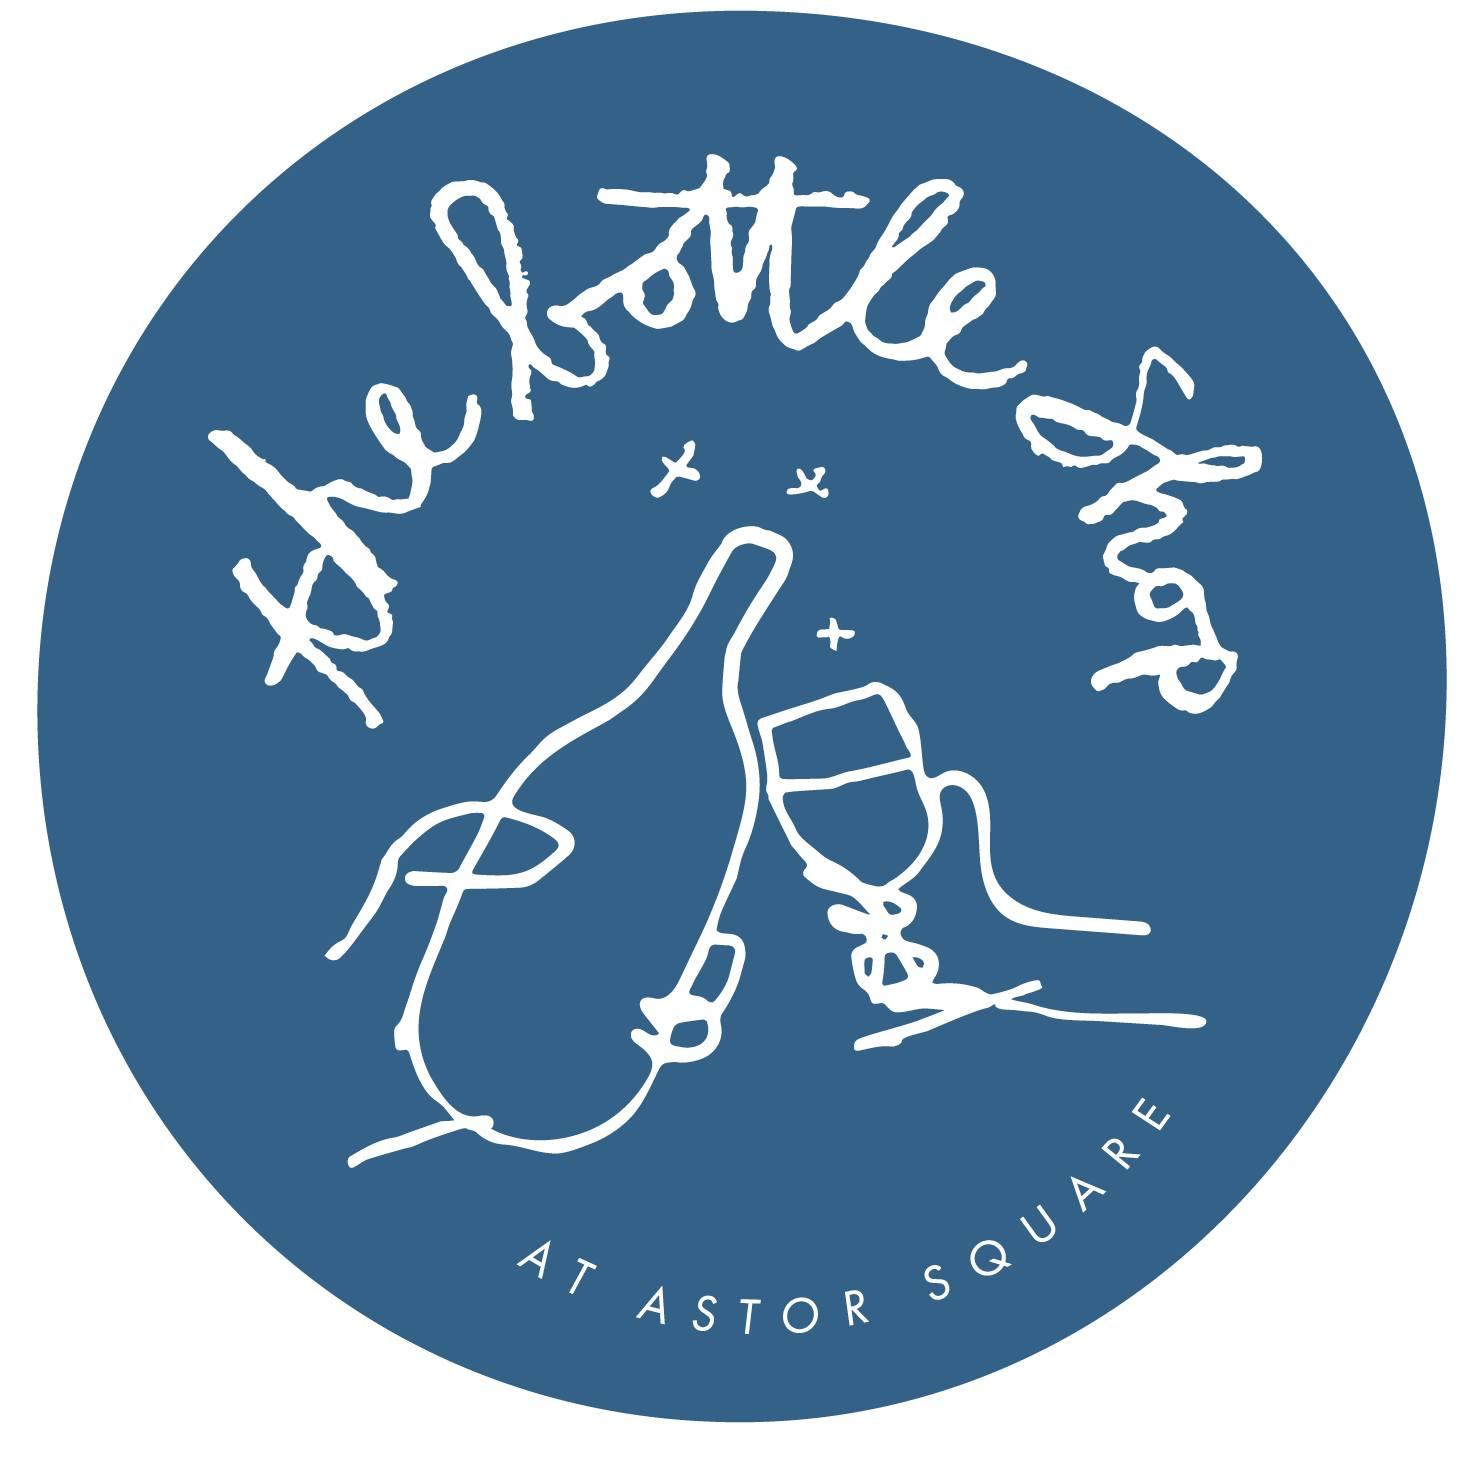 logo for the bottle shop at astor square